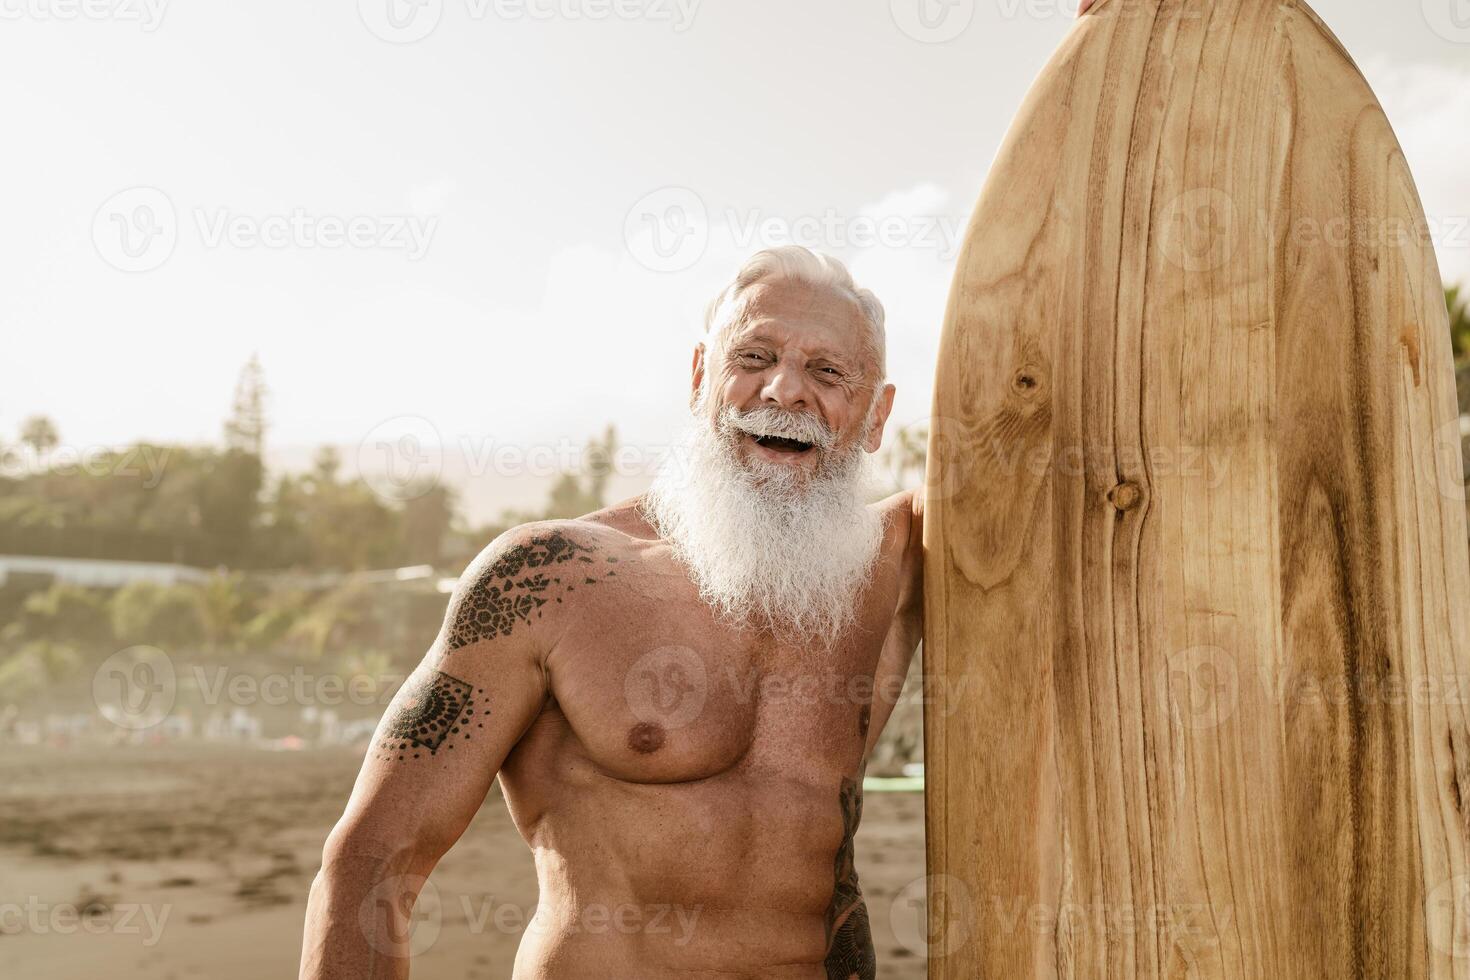 Sénior en forme homme ayant amusement surfant sur tropical plage - personnes âgées en bonne santé gens mode de vie et extrême sport concept photo